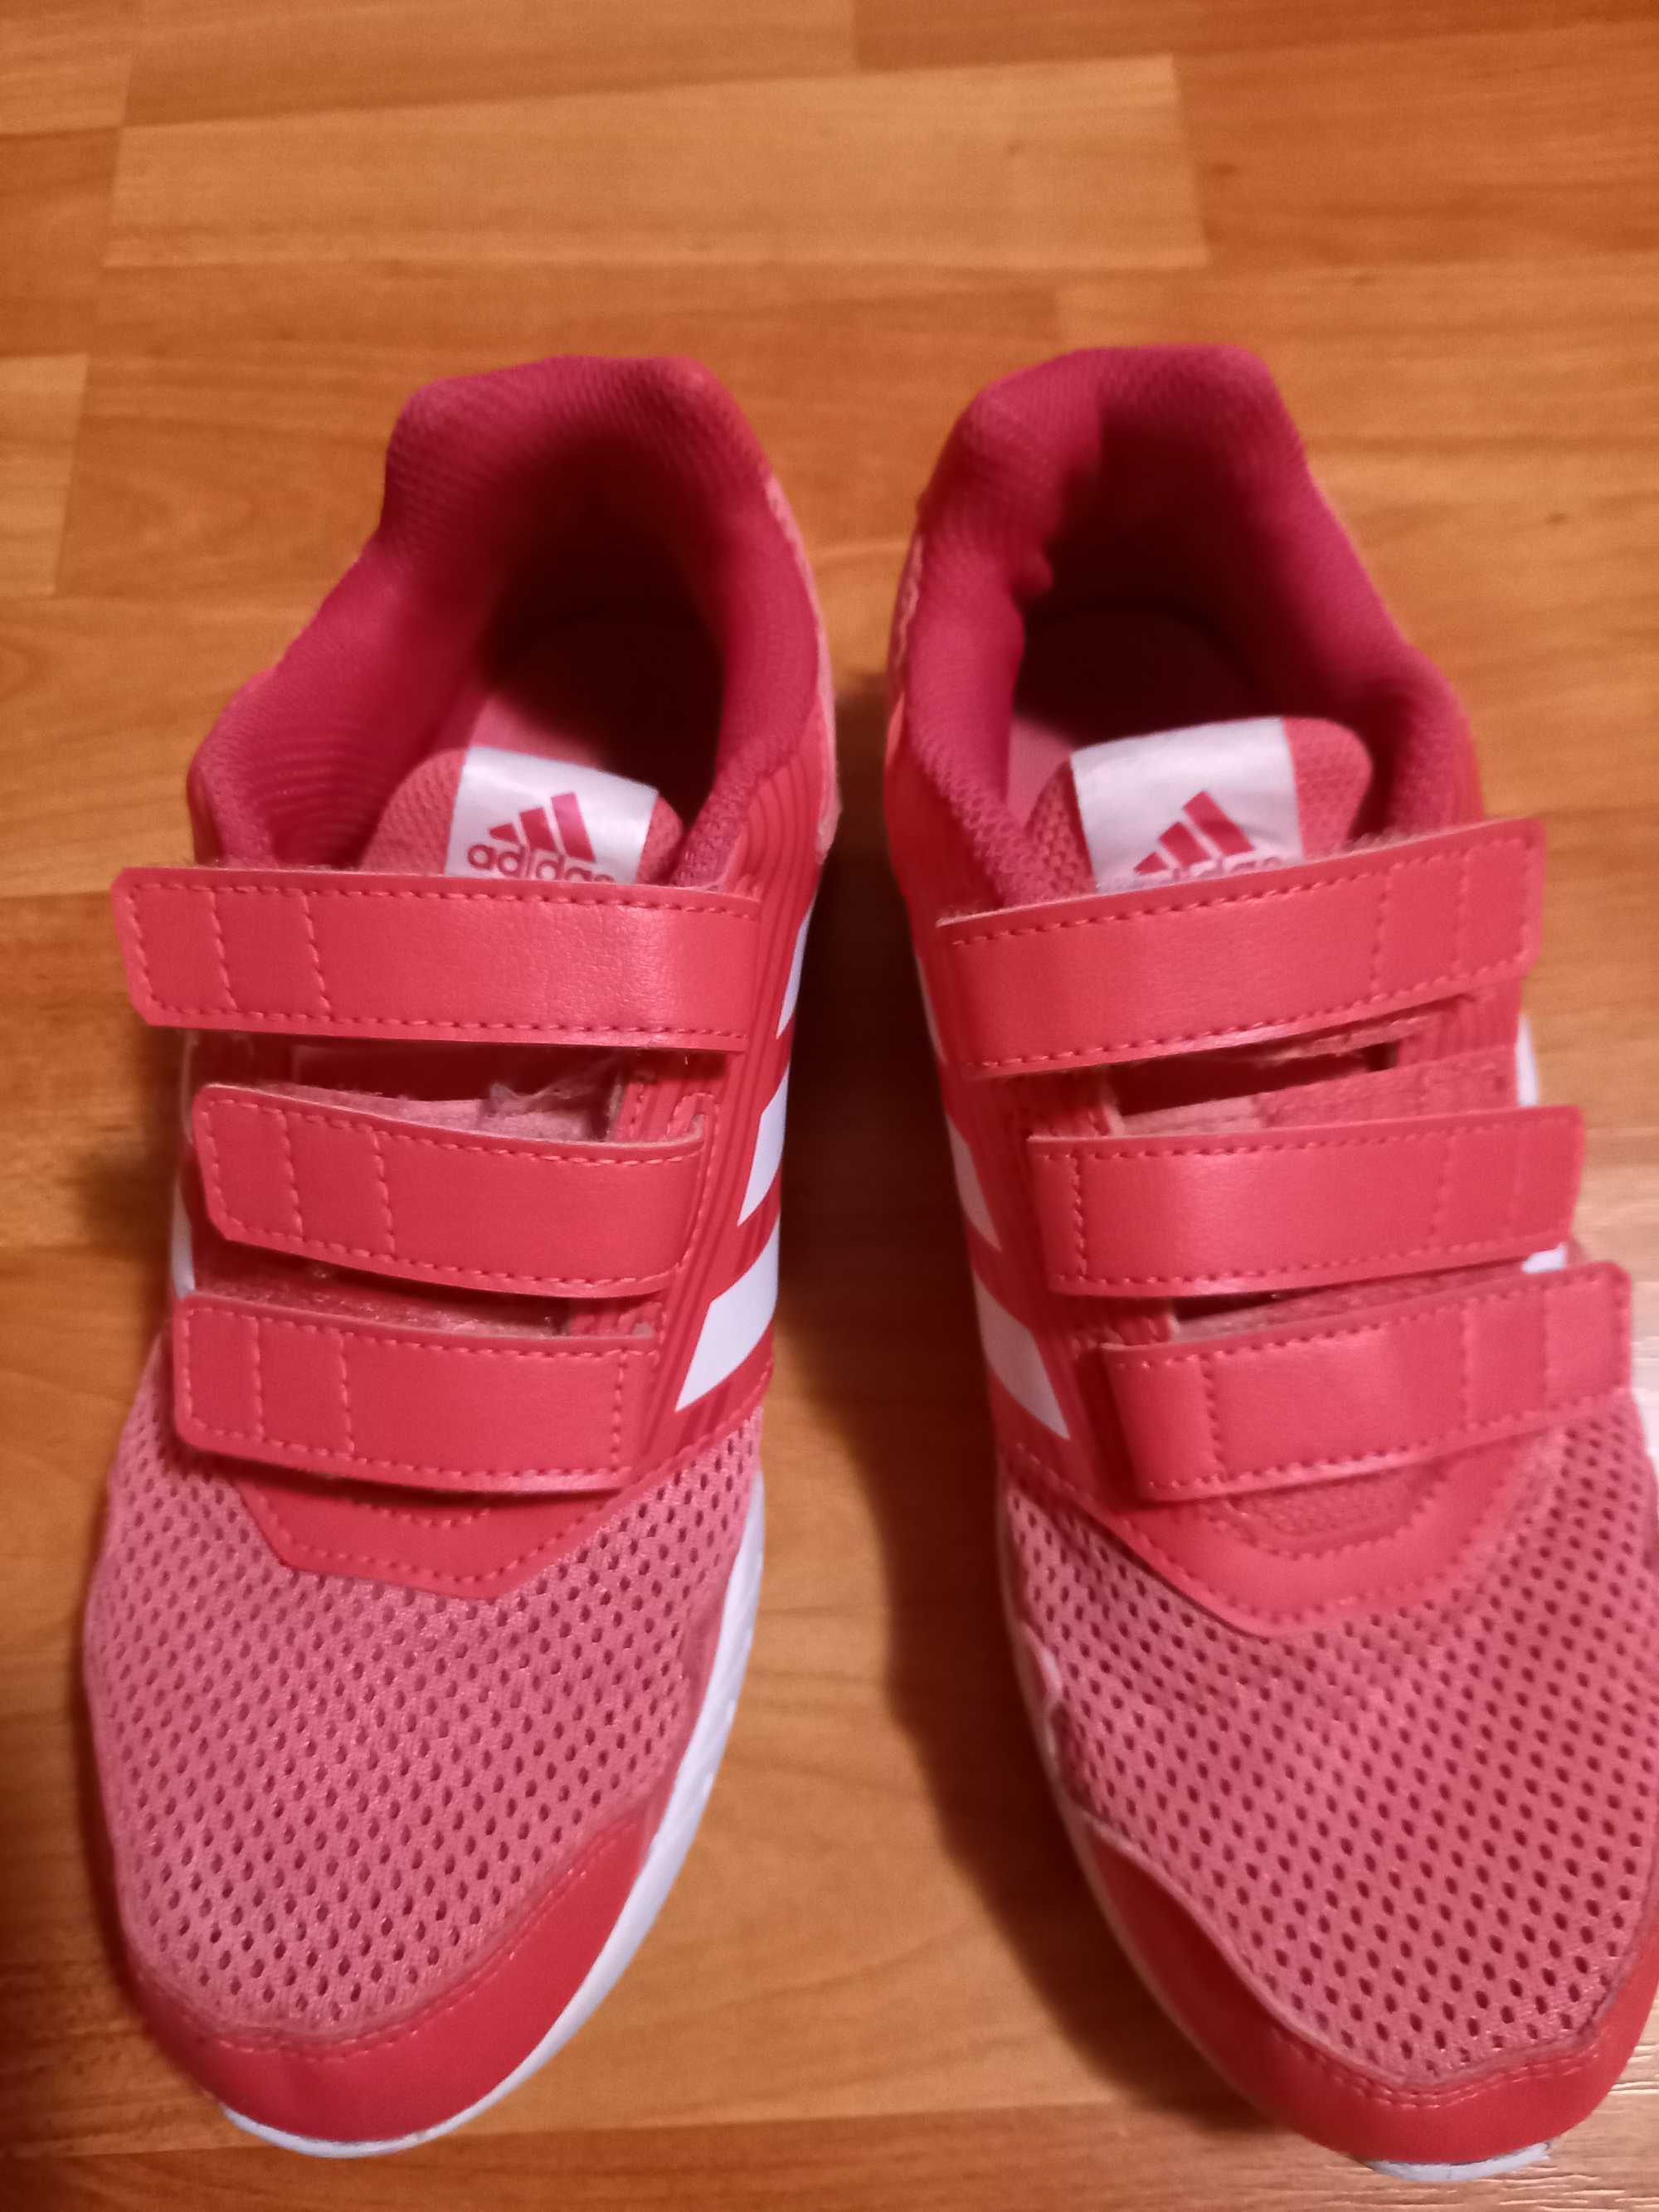 Pantofi Adidas copii nr. 35 roz, putin folositi la plimbare.